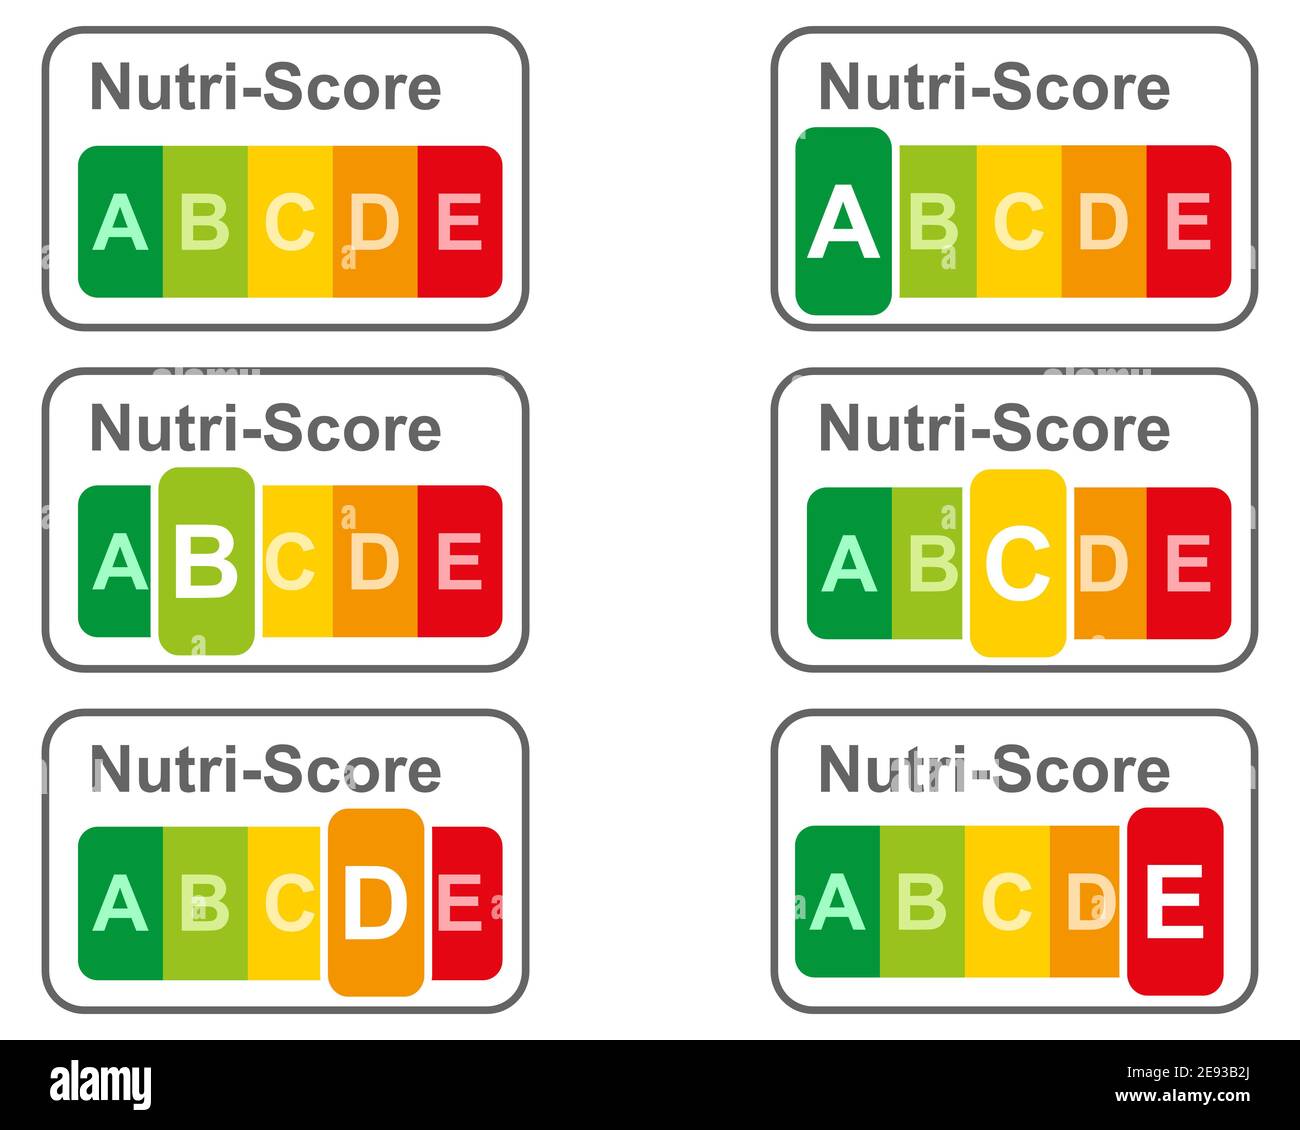 Illustration der Lebensmittelkennzeichnung mit dem Nutri-Score auf Weiß Stockfoto